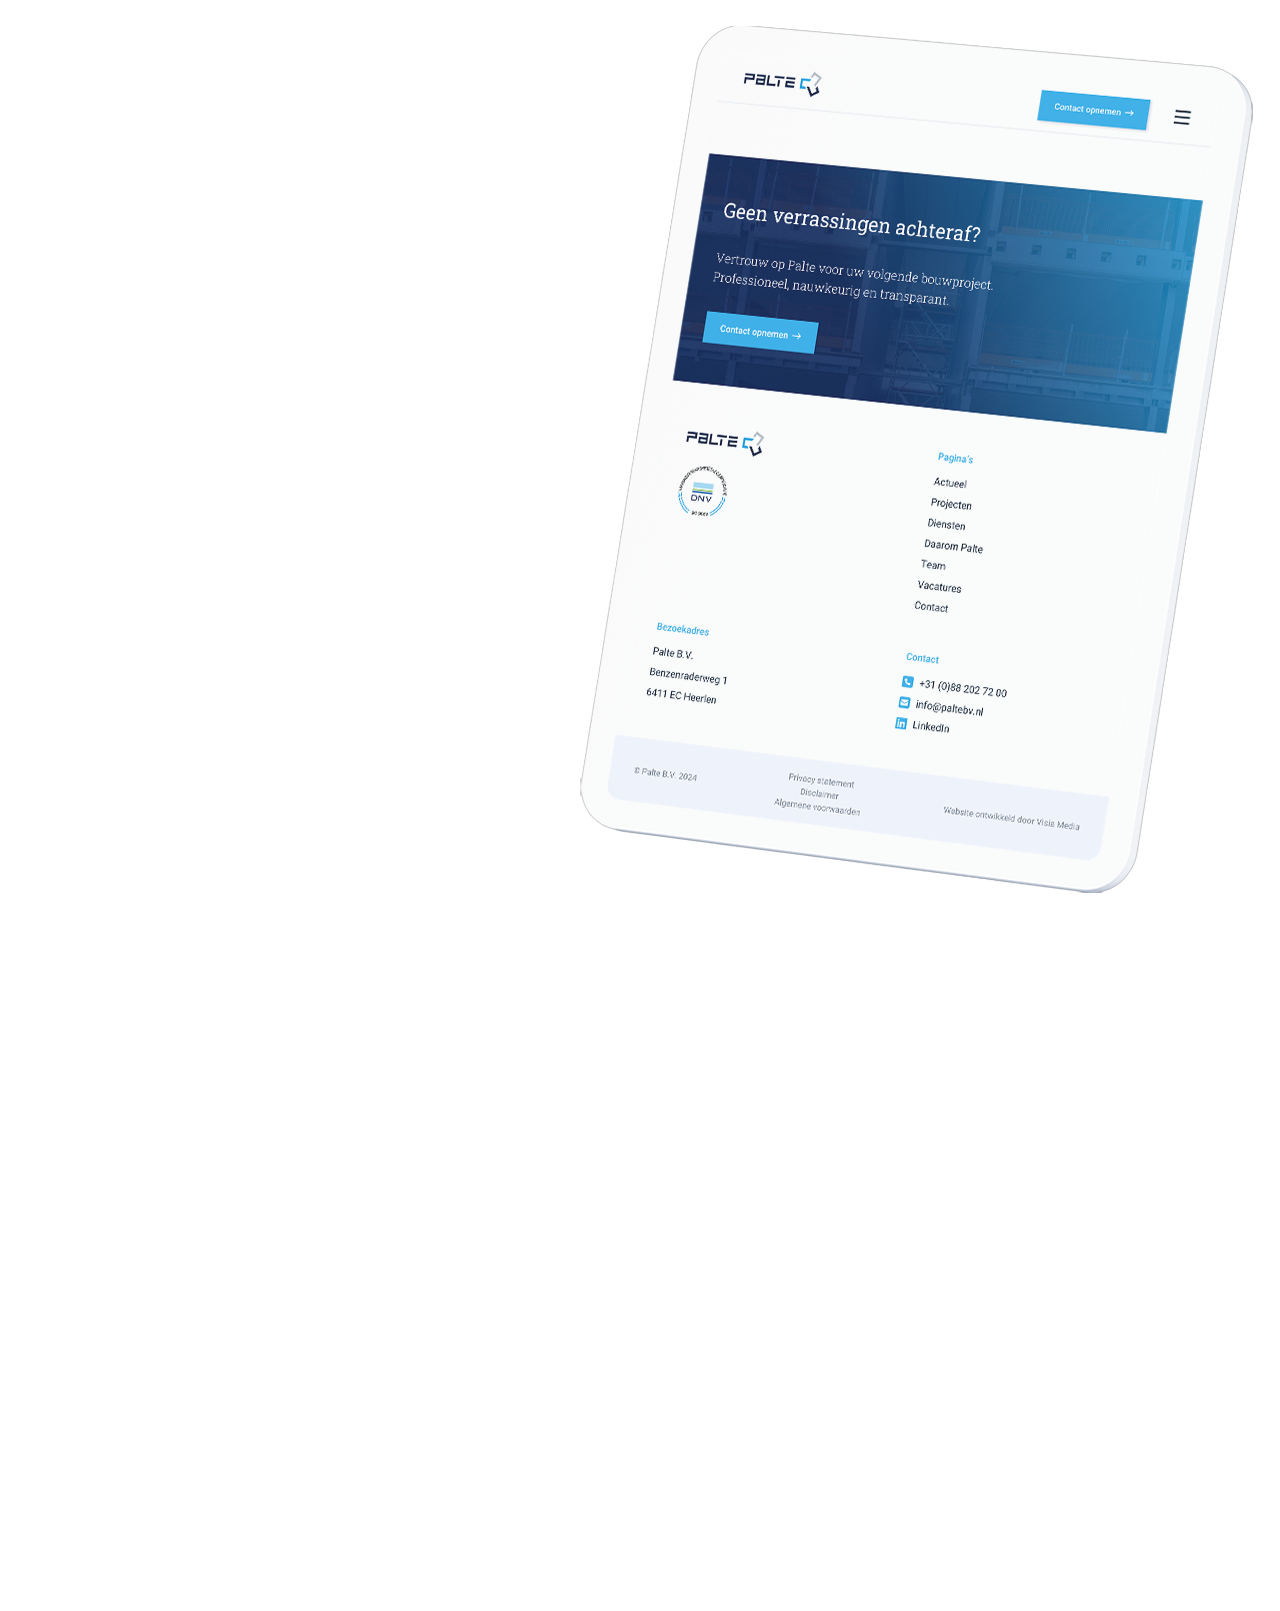 Tablet met daarop een wit-blauwe website met tekst en contactgegevens in het Nederlands, getiteld "Geen verrassingen achteraf?" van de firma Palte B.V.